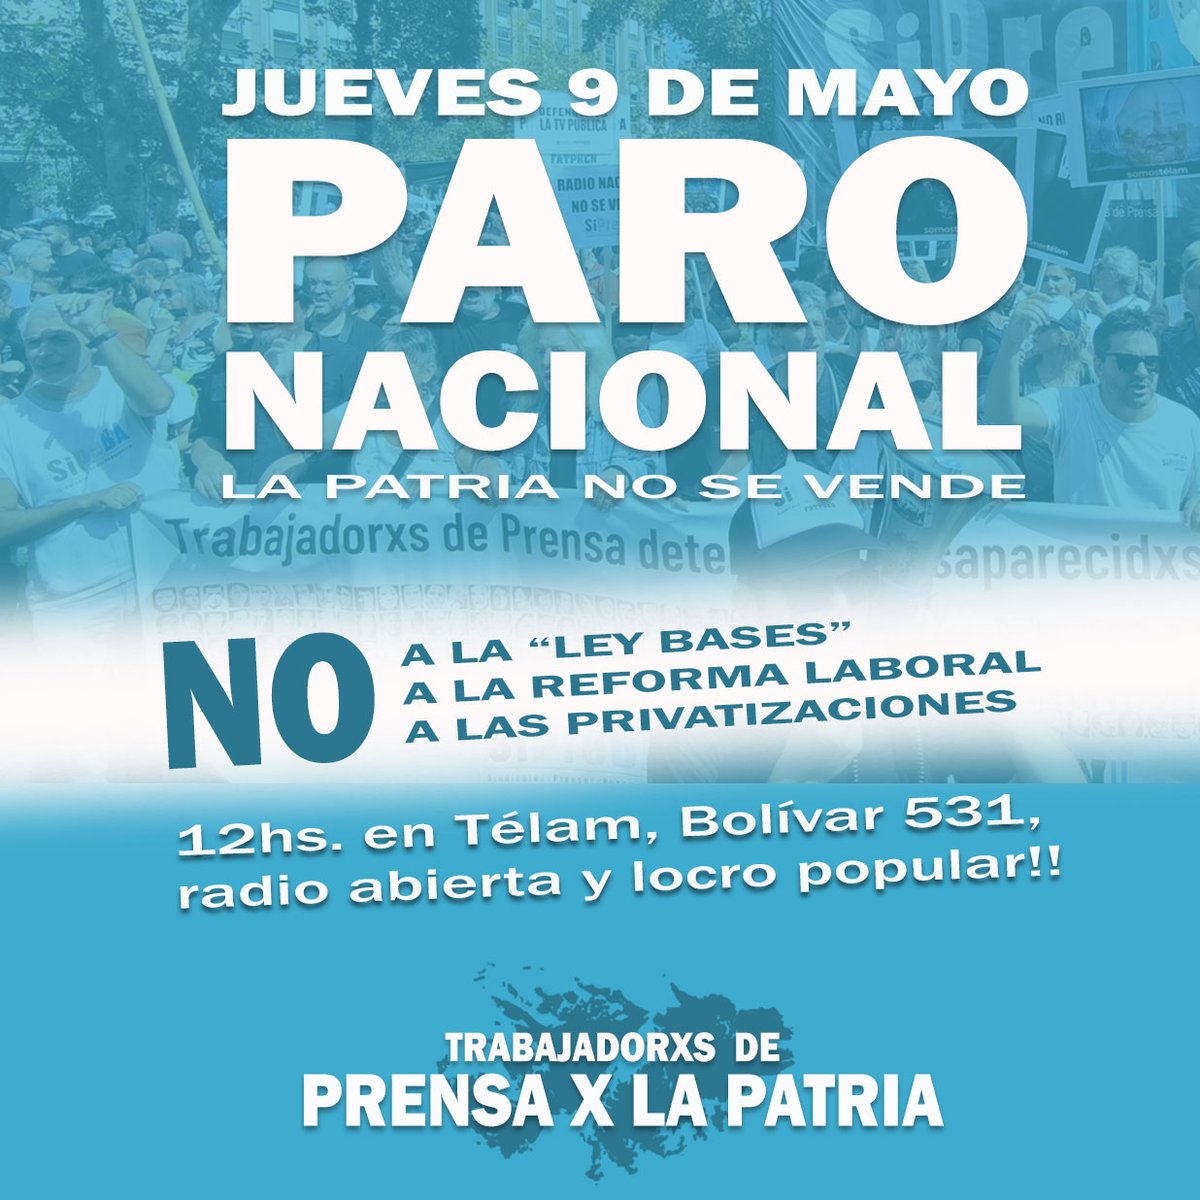 Este 9 de mayo nos sumamos al paro general convocado por la @cgtoficialok y las CTAs. Además, las y los trabajadores de @sipreba lo hacemos activo en el acampe de @somostelam, Bolivar 531, a las 12. 

#LaPatriaNoSeVende #TelamSeDefiende #NoALaLeyBases #ParoGeneral #ParoNacional